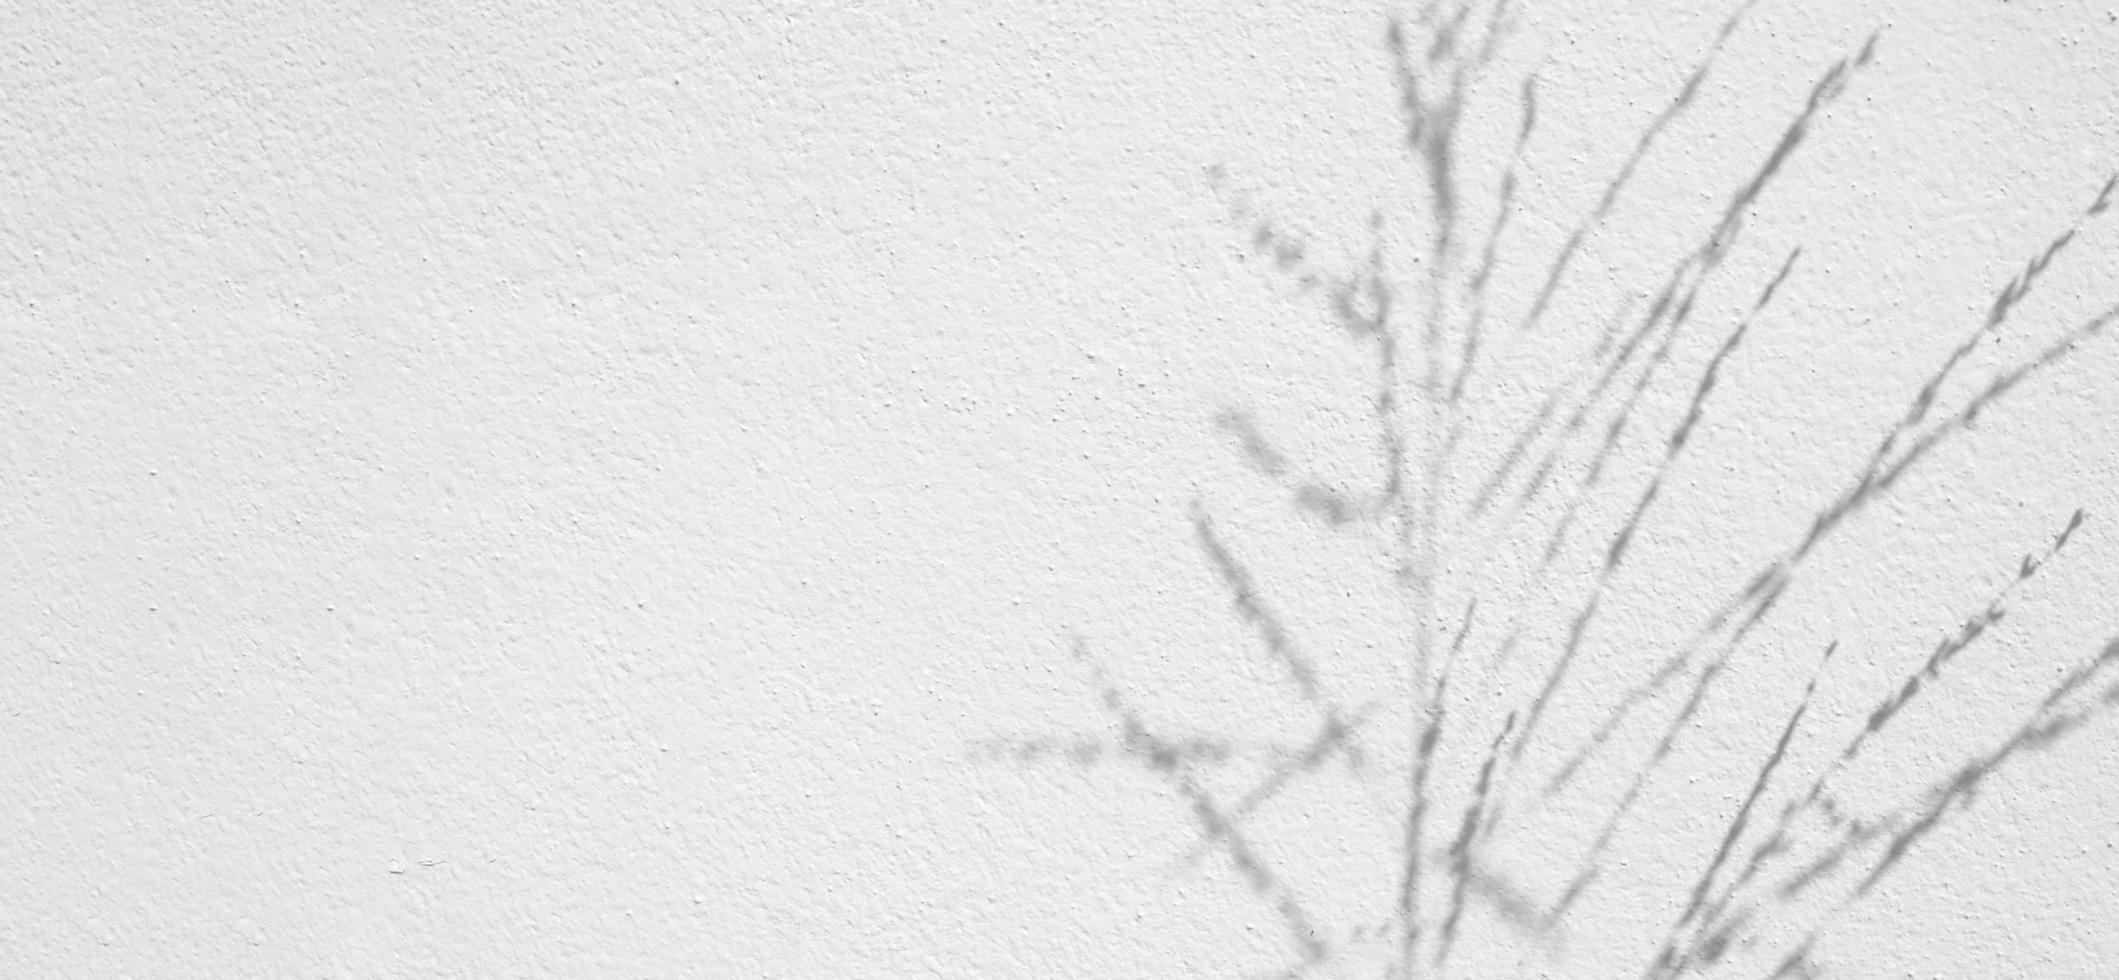 textura transparente de pared de cemento blanco una superficie áspera y sombra de hoja, con espacio para texto, para un fondo foto